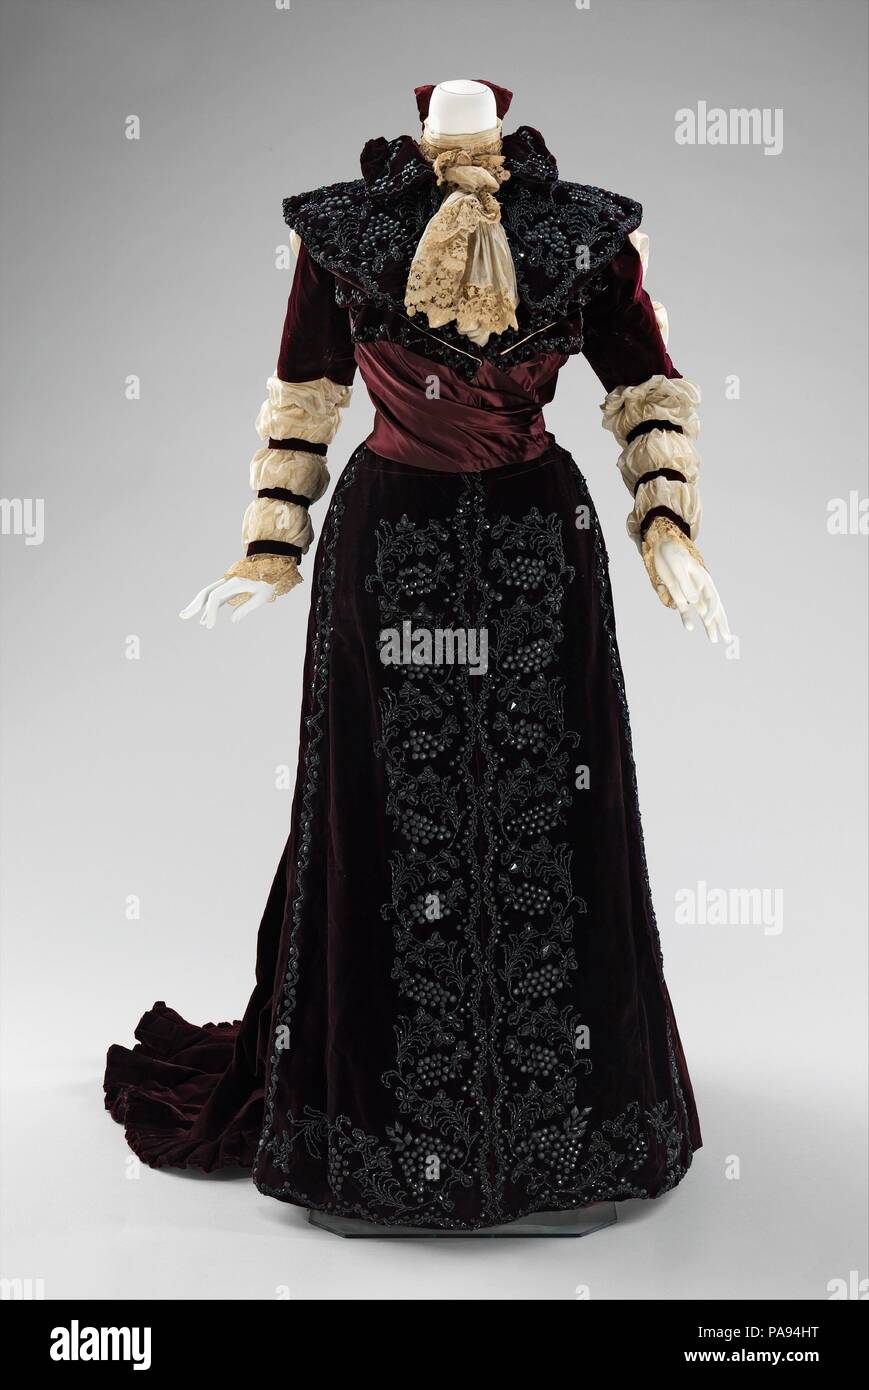 Robe. Culture : L'Américain. Date : 1890. Cette robe est conforme à  l'intérêt historique dans les reconstitutions populaire au 19ème siècle.  Les longues manches bouffantes se réfèrent tant à l'époque élisabéthaine et